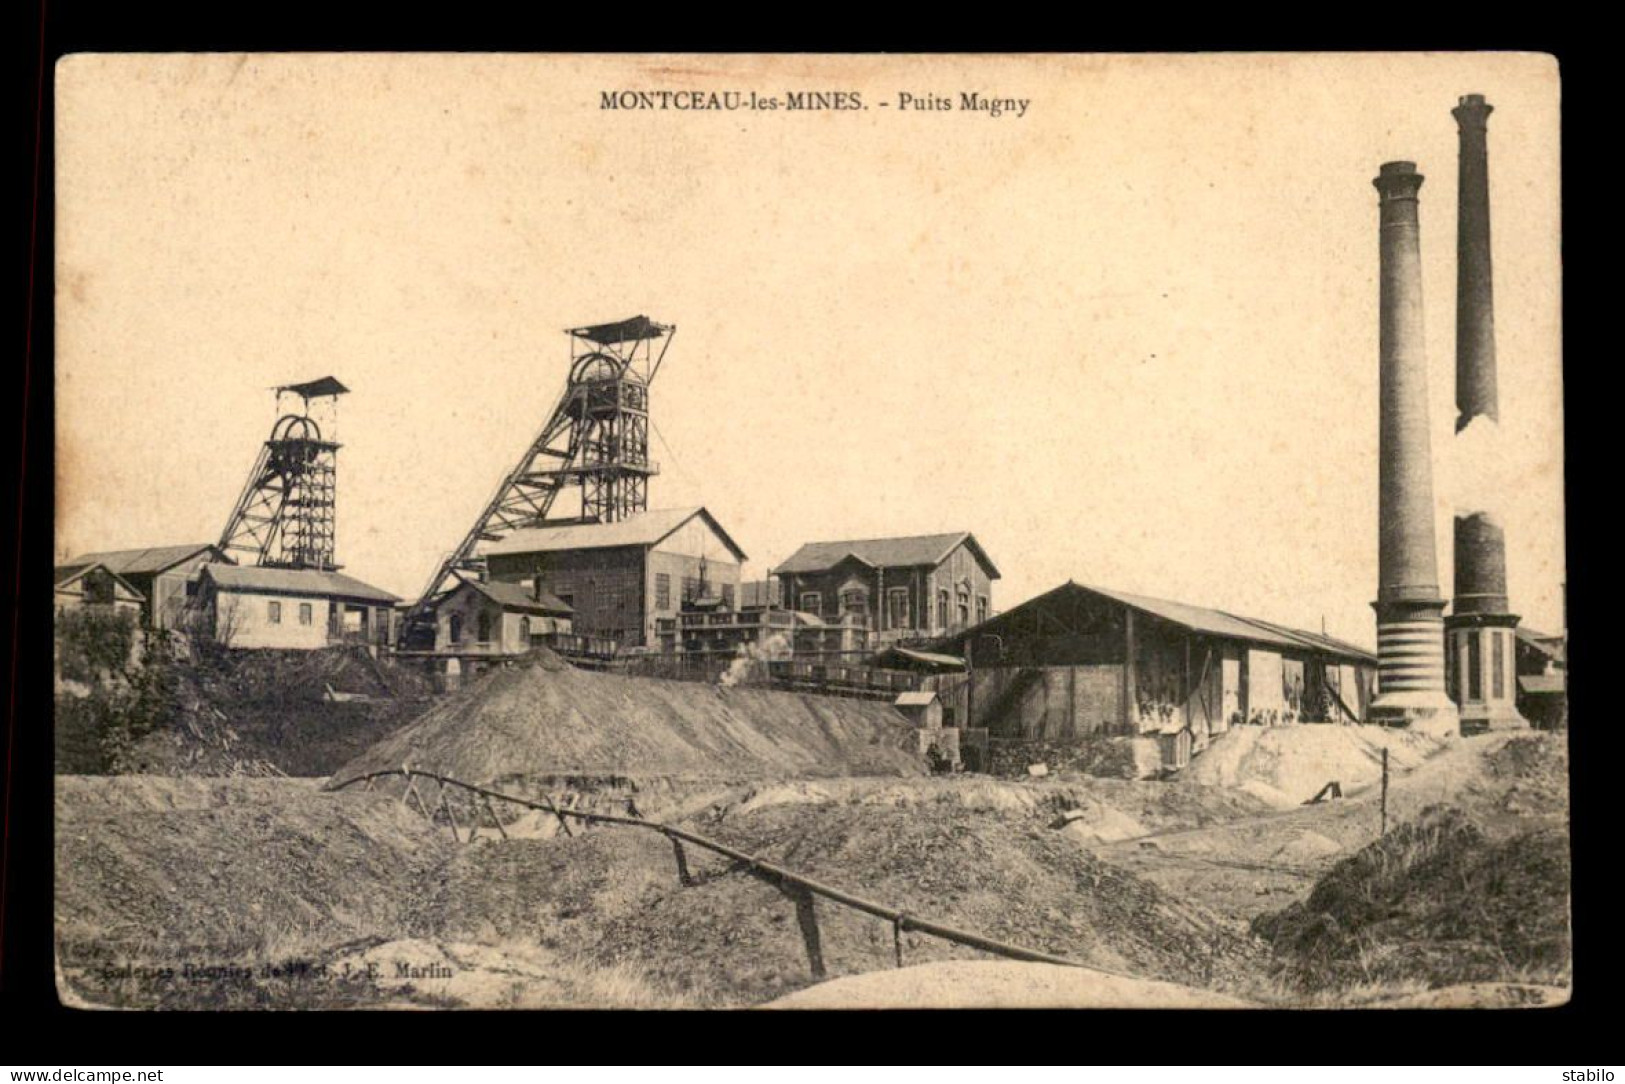 71 - MONTCEAU-LES-MINES - PUITS MAGNY - MINE - Montceau Les Mines